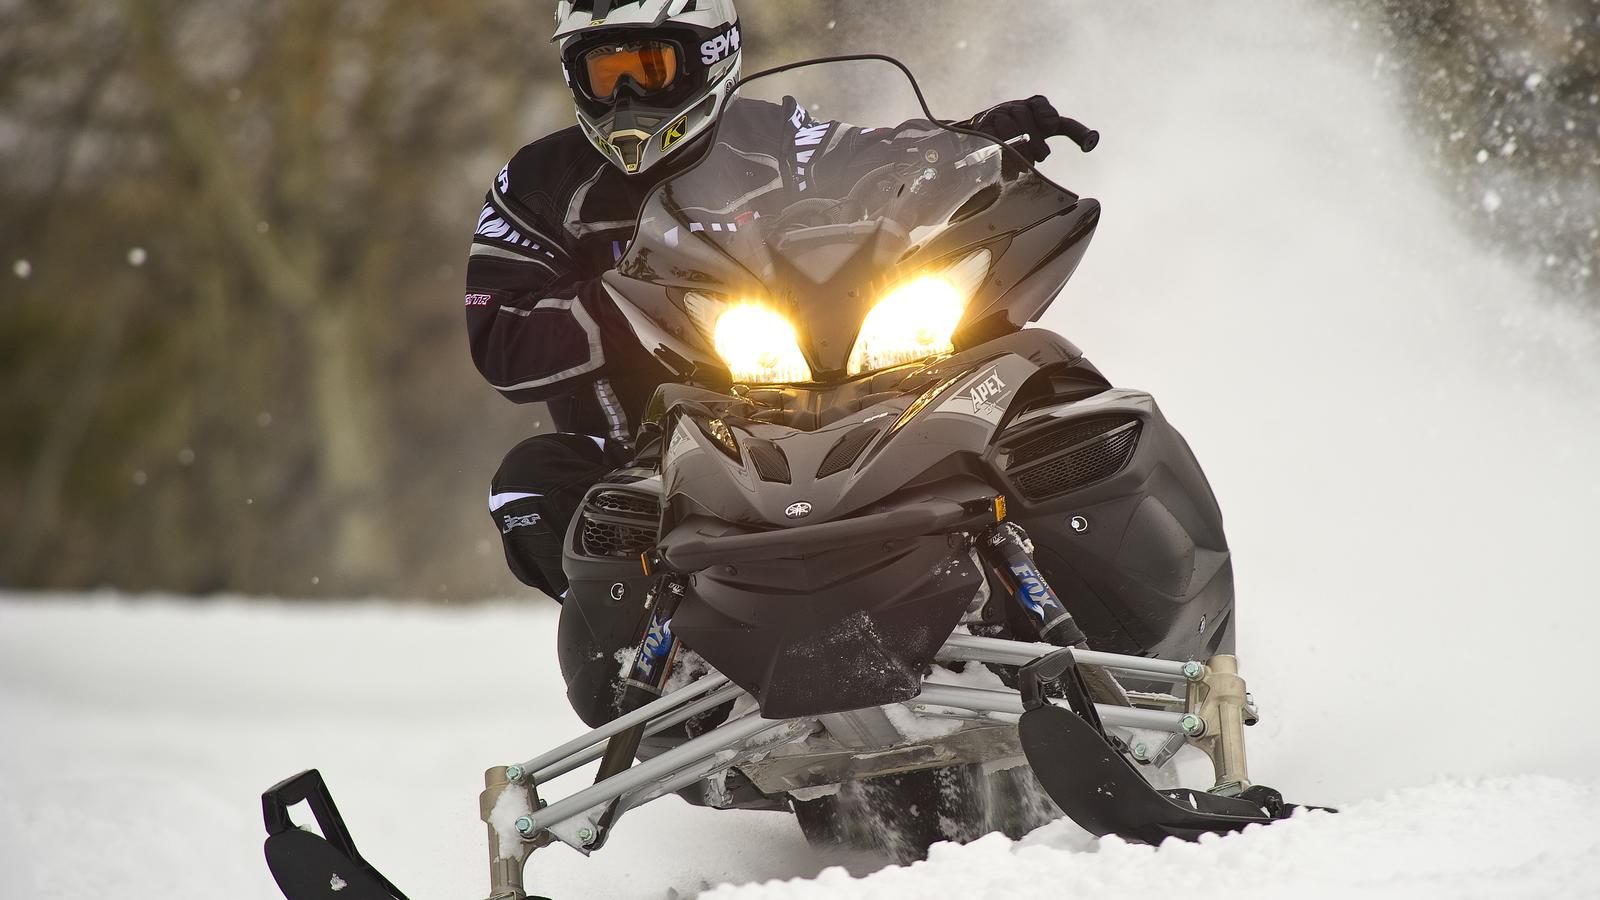 Ten jedyny Apex SE wyznacza y: skuter śnieżny do jazdy po szlaku z pełnym zawieszeniem pneumatycznym, układem EPS (elektrycznym układem wspomagania kierownicy) oraz 4-cylindrowym silnikiem z